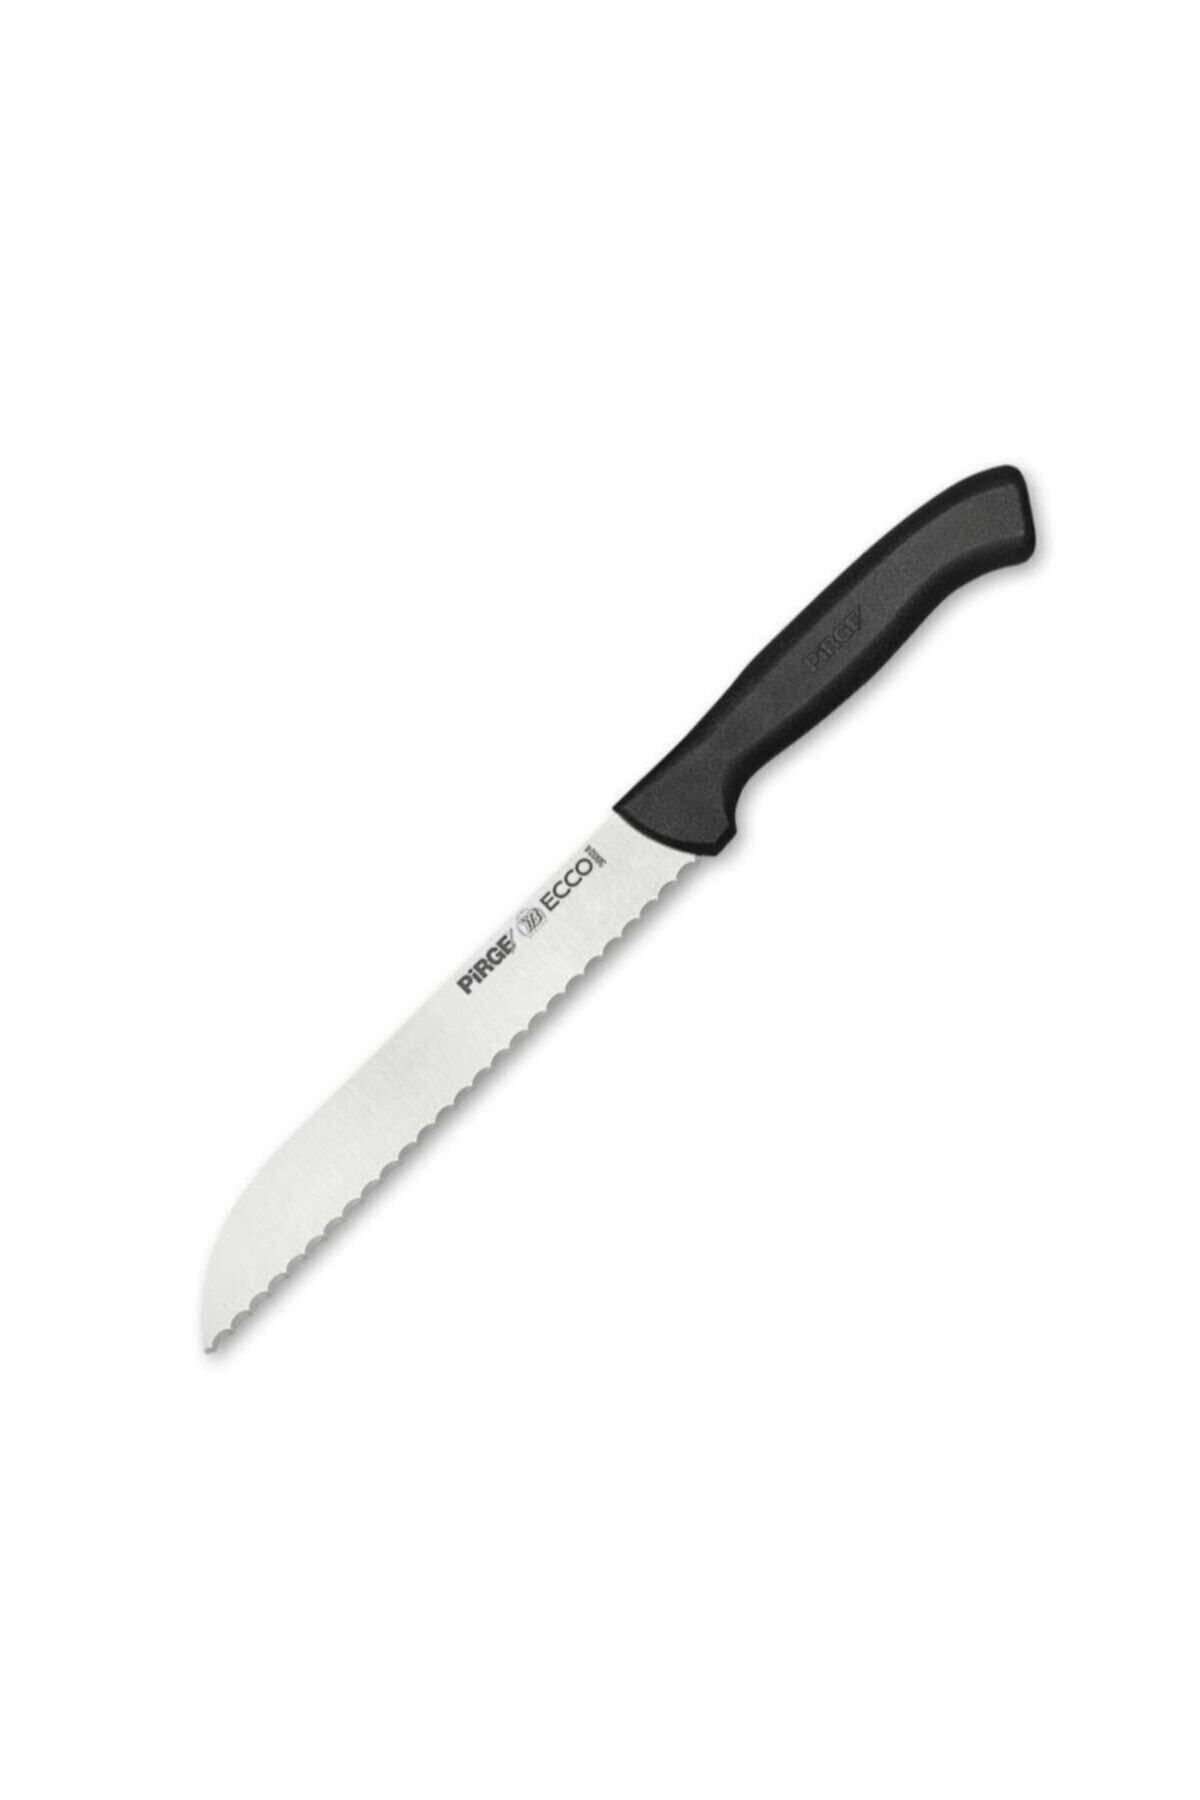 Pirge Pirge Ecco Dişli Ekmek Bıçağı 17.5 Cm 38024